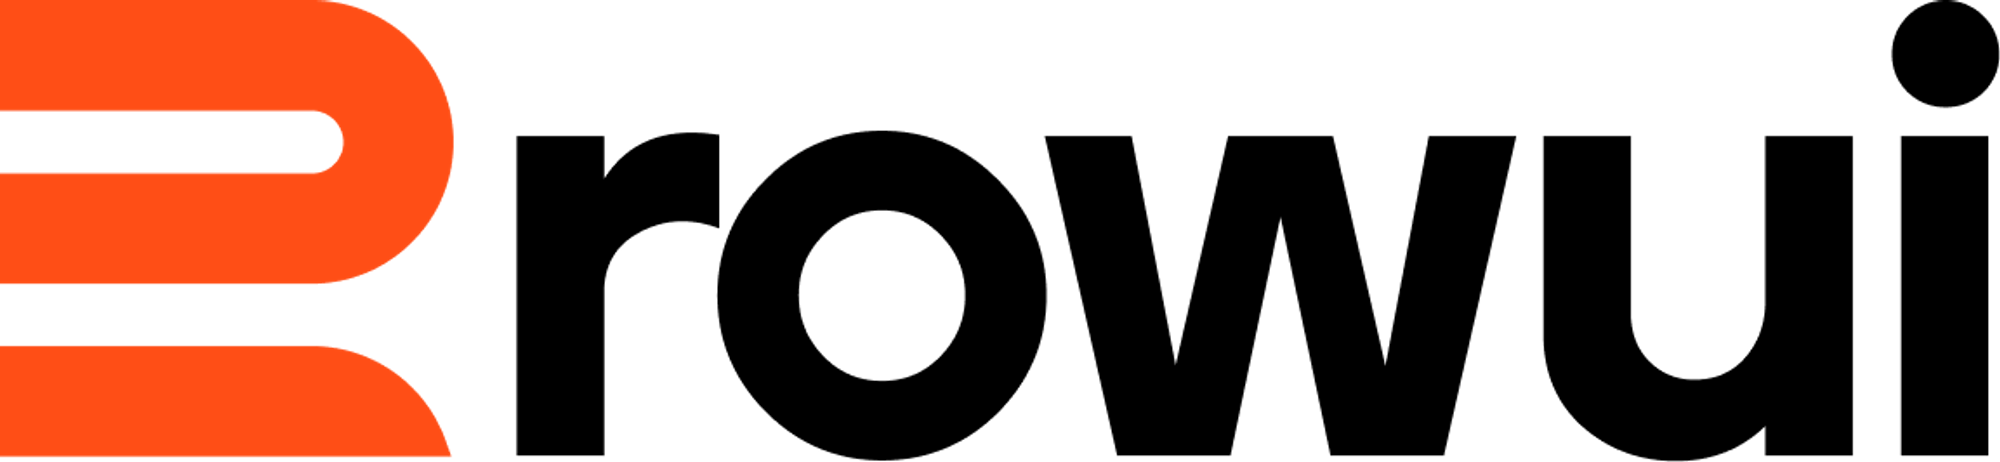 Modern logo design for rowui.com